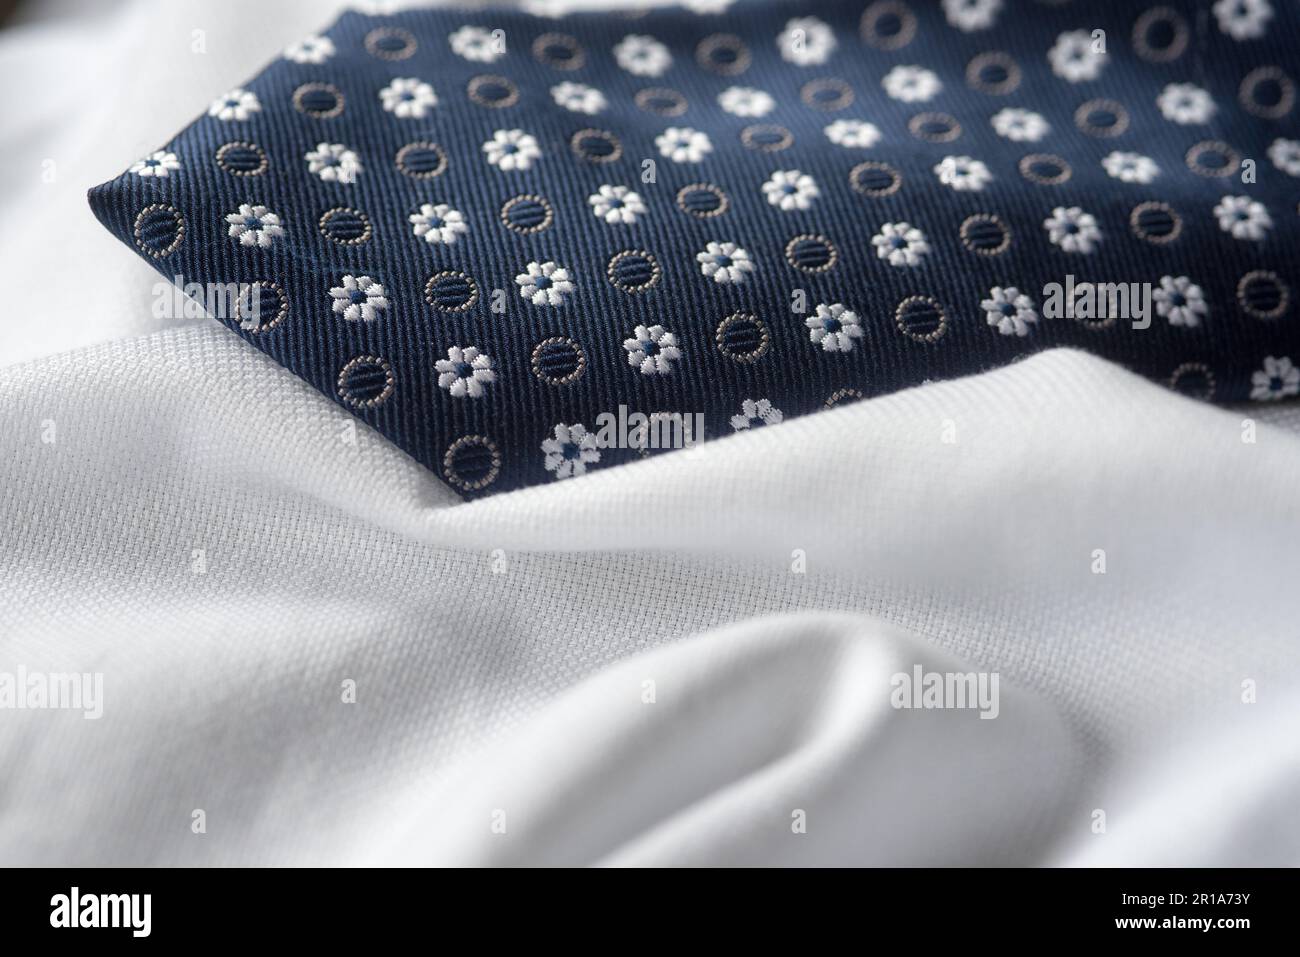 una camicia bianca ed una cravatta blu con decori, vestire in maniera elegante Stock Photo